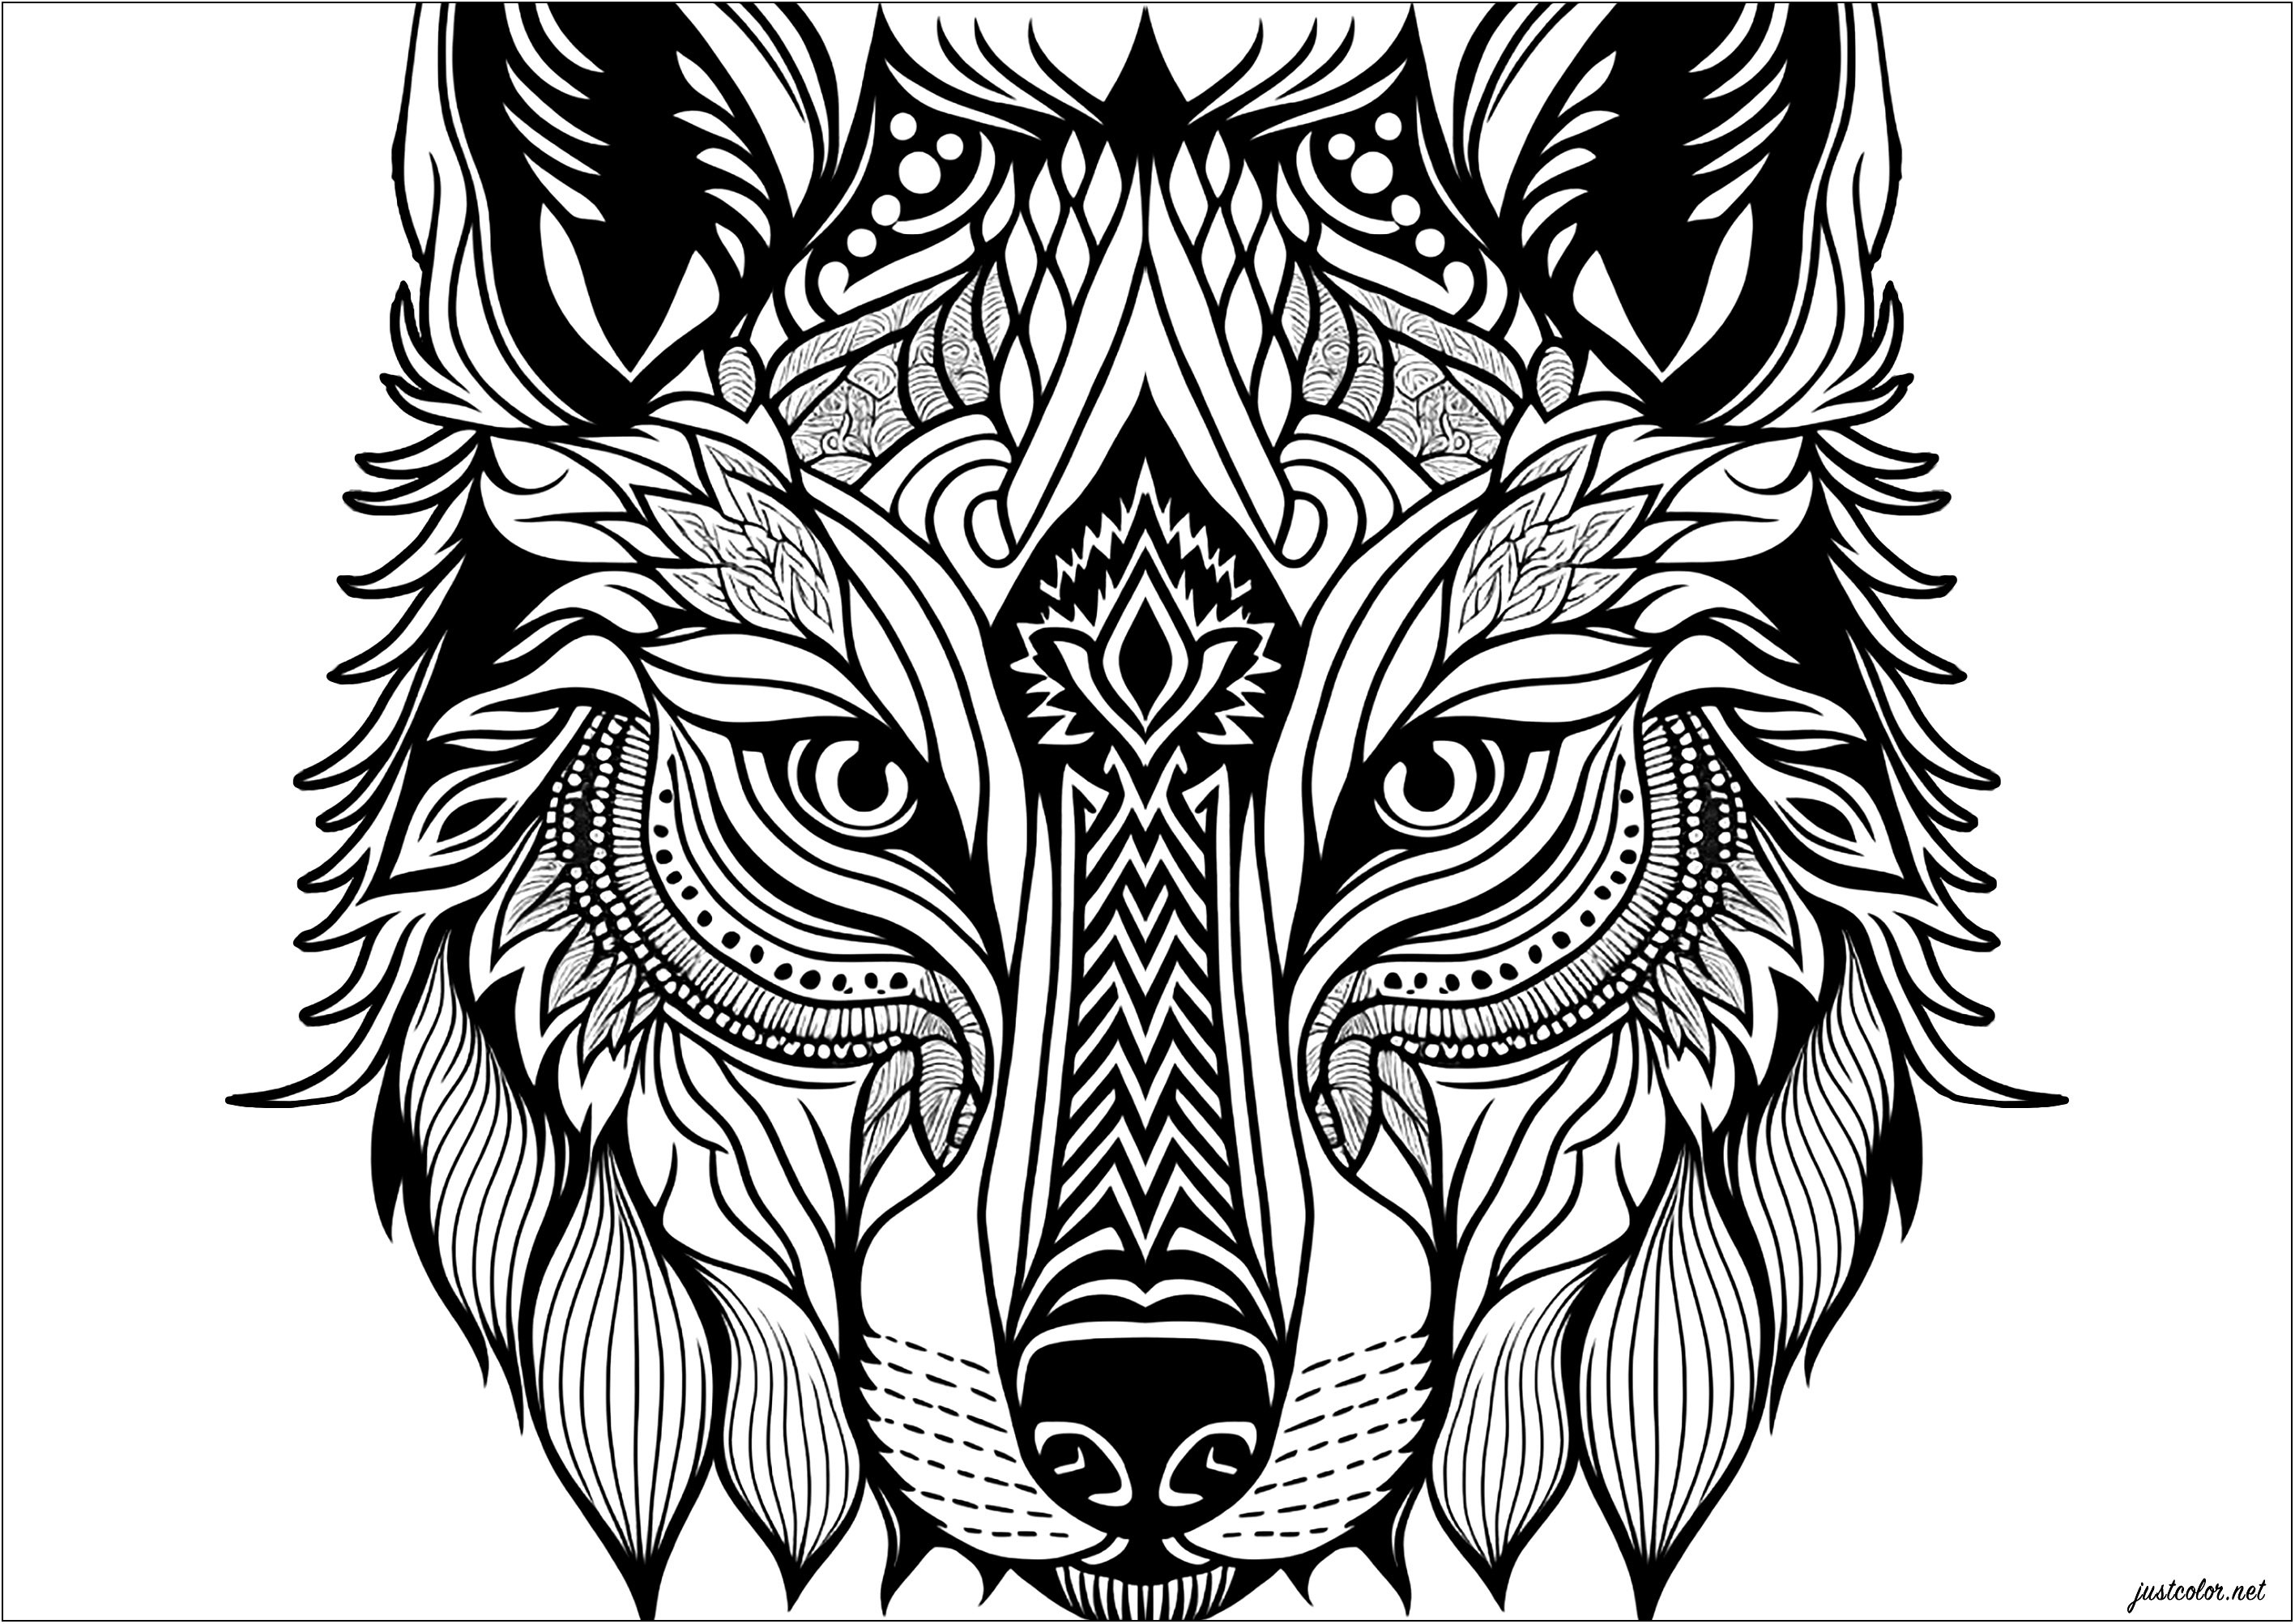 Laissez libre cours à votre imagination avec ce superbe coloriage représentant une tête de loup. Cette illustration présente des motifs abstraits et géométriques, créant une œuvre captivante et hypnotisante. À vous de donner vie à ces lignes et formes avec des couleurs vives et audacieuses, donnant à la tête de loup une allure unique et colorée, Artiste : IAsabelle